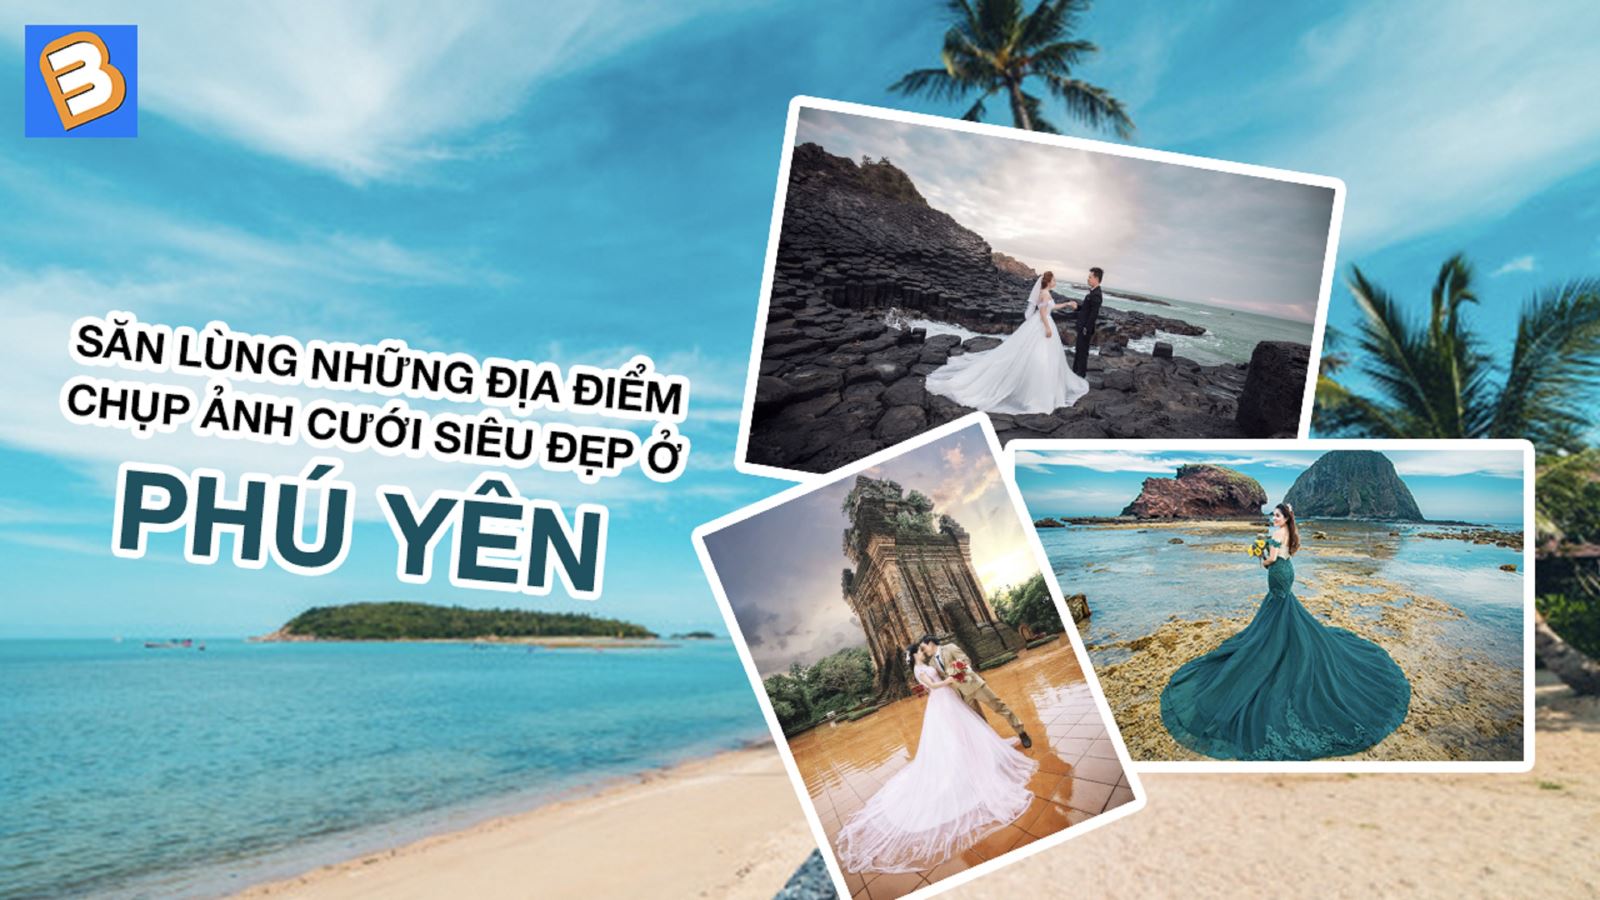 Nếu bạn muốn có một bộ ảnh cưới thật đẹp và lãng mạn tại Phú Yên, hãy đến với chúng tôi để chụp ảnh cưới tại đây. Với không gian bao quanh làn biển xanh thẳm và những cánh đồng lúa bạt ngàn, chúng tôi sẽ giúp cho ngày cưới của bạn thêm sinh động và tiền đồ.